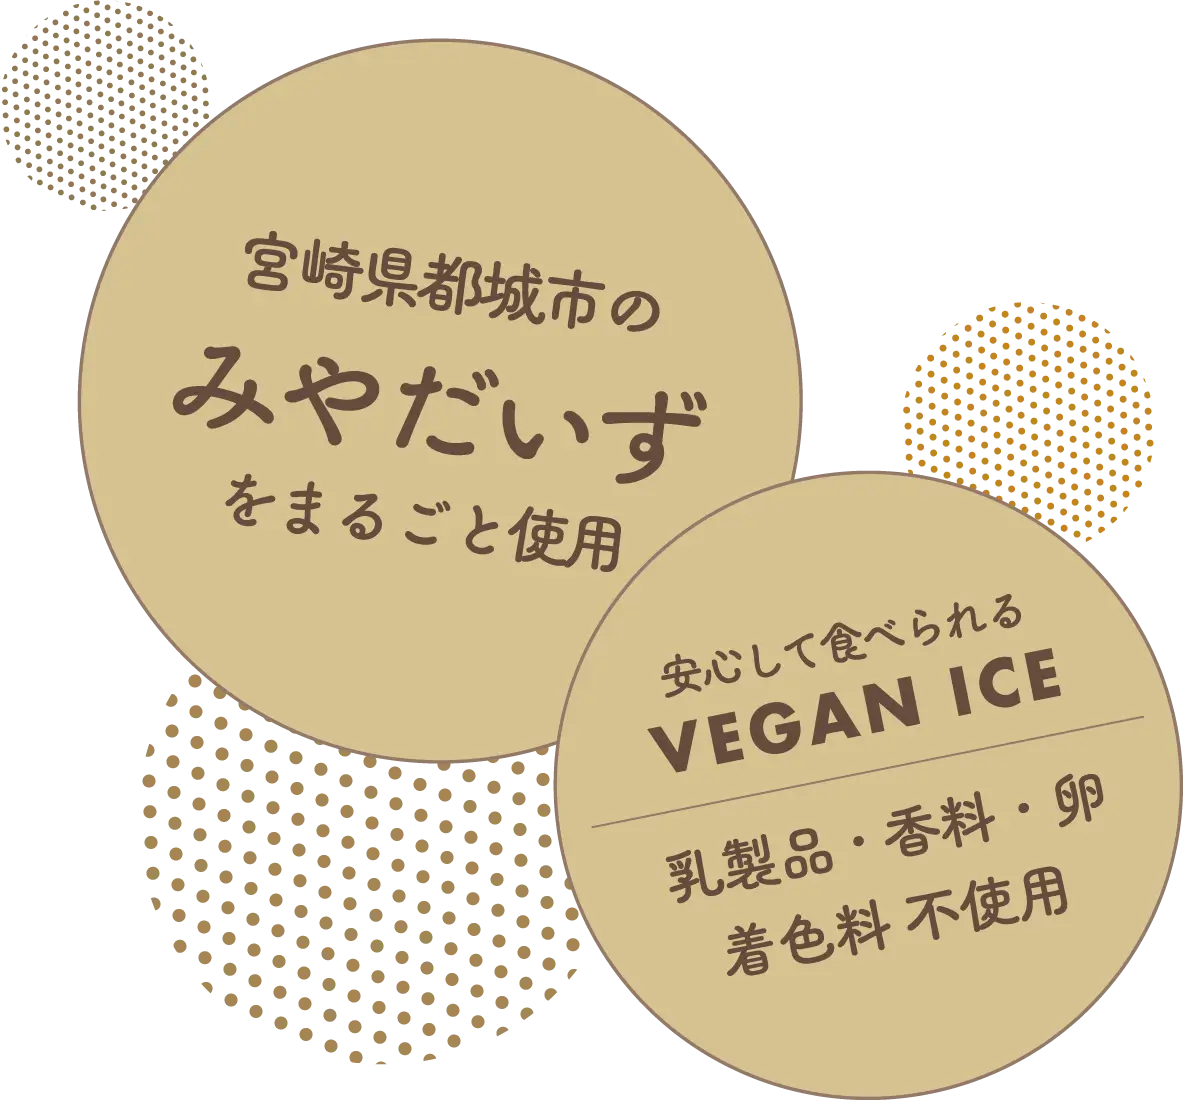 宮崎県都城市のみやだいずをまるごと使用！乳製品・香料・卵・着色料不使用で、安心して食べられるVEGAN ICE